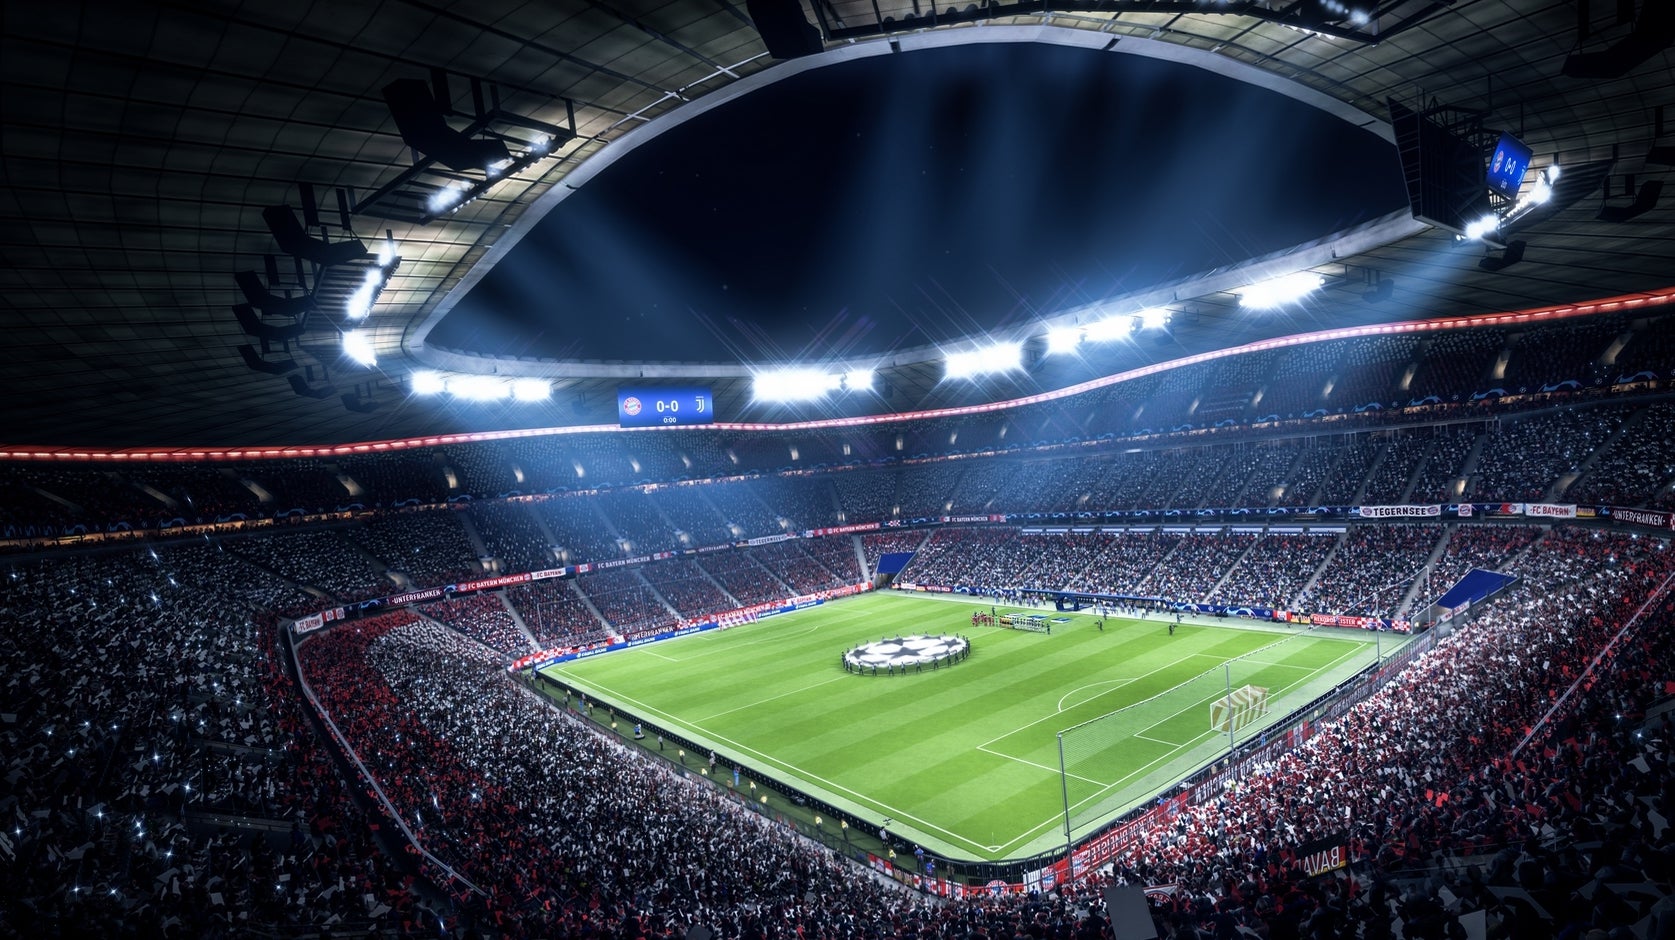 Bilder zu FIFA 19 Aufstellung - Die beste Formation und Taktik für den Sieg